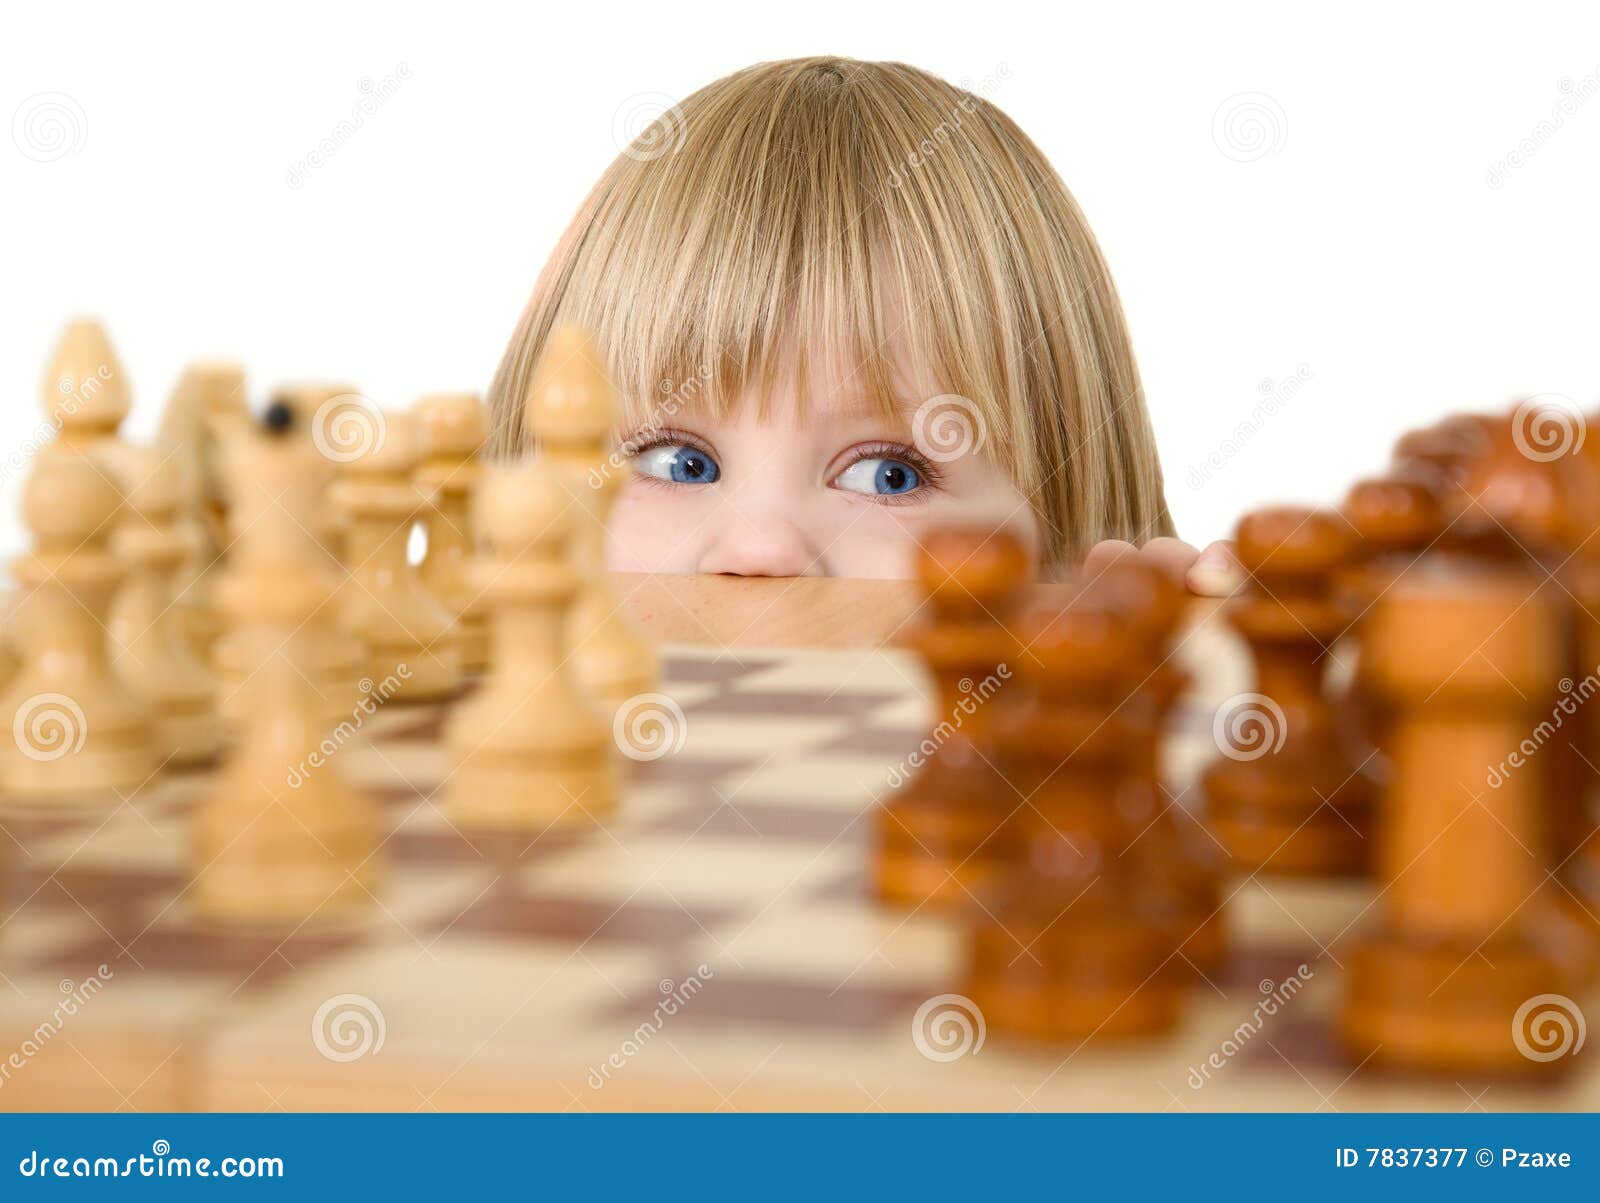 child ang chess